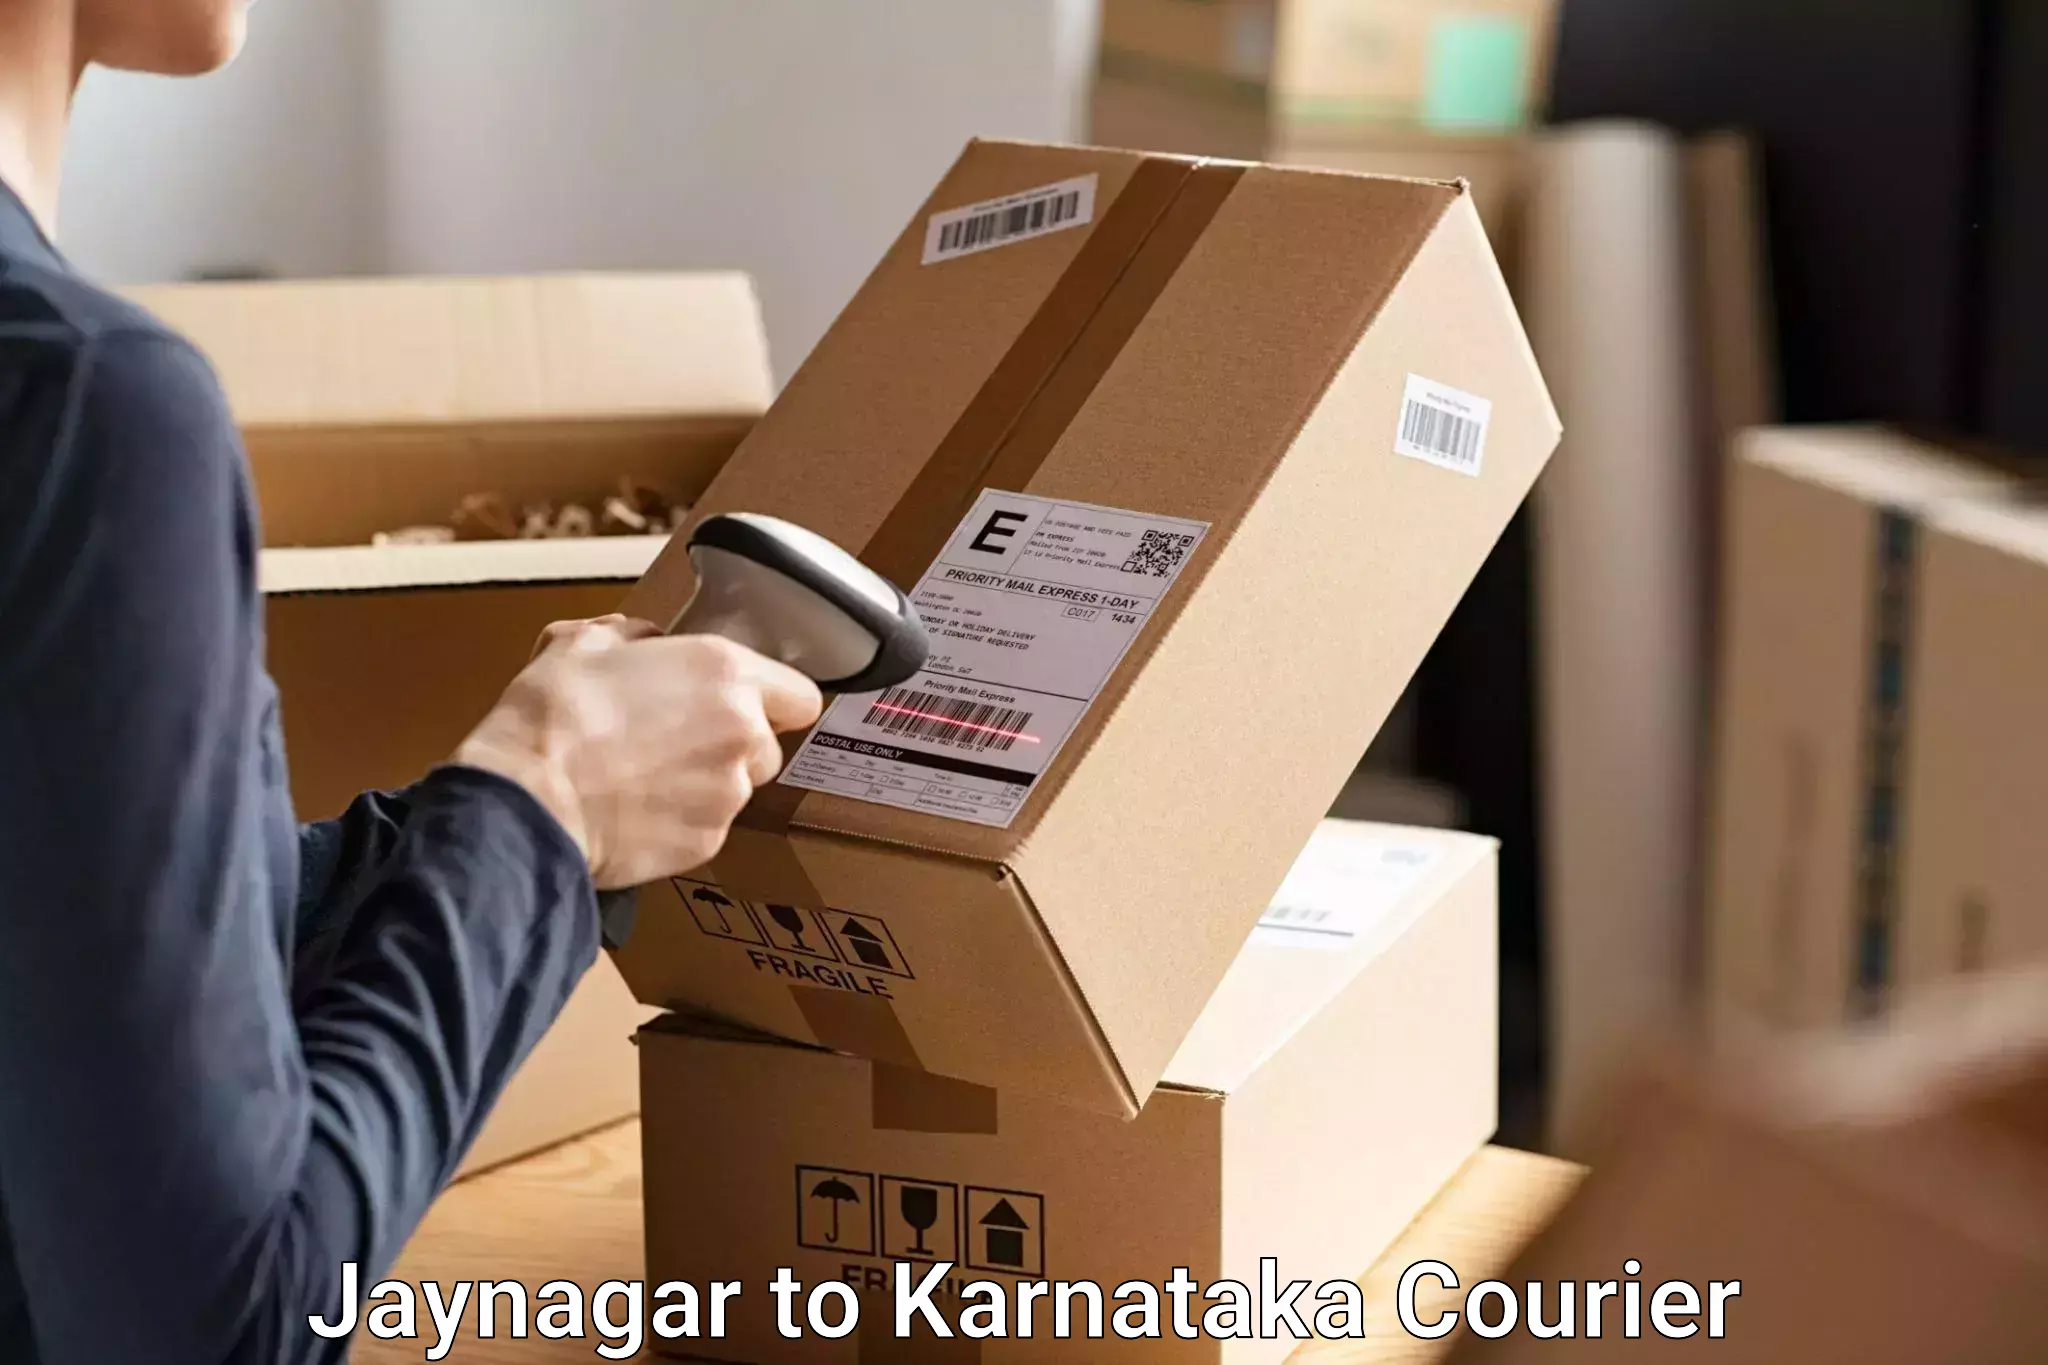 Baggage handling services Jaynagar to Karnataka